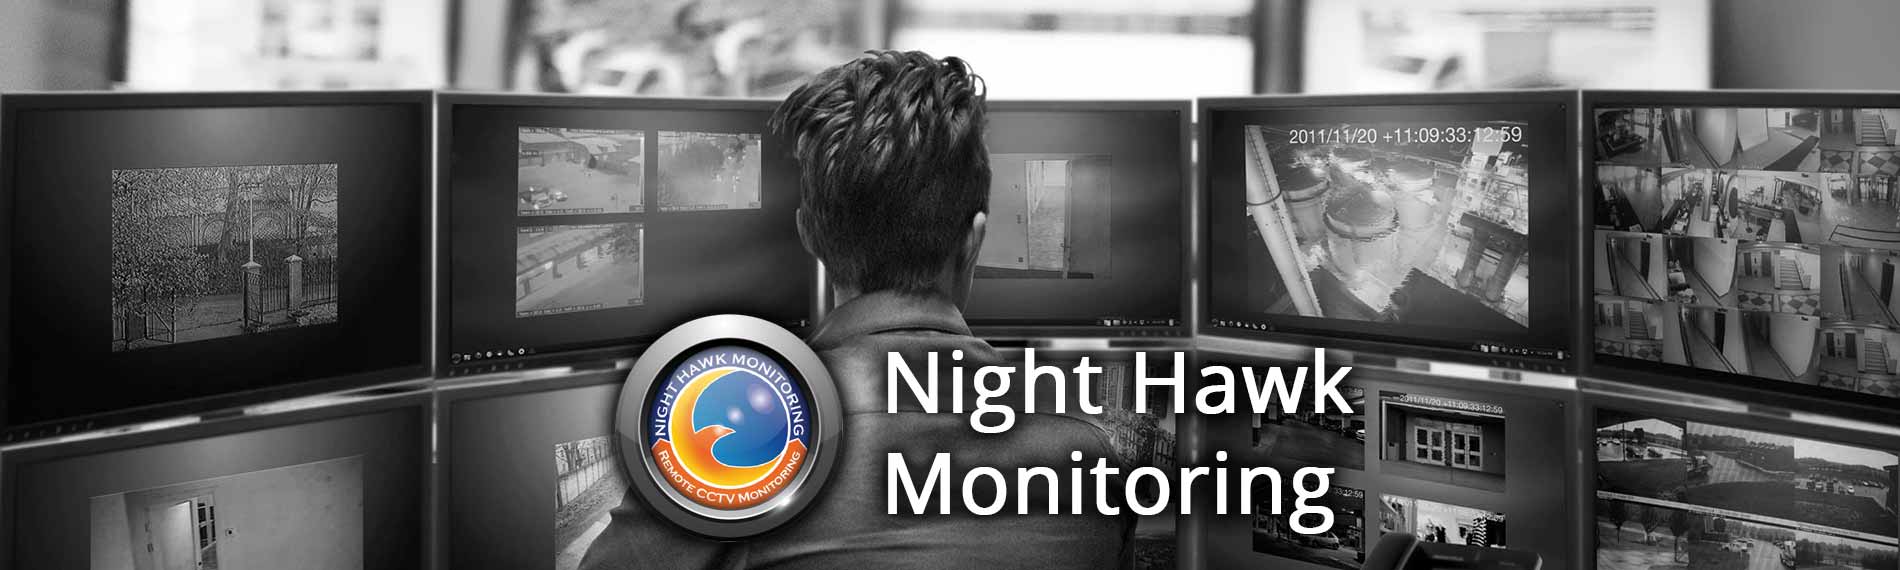 Remote video surveillance Bakersfield CA - Live security cameras monitoring Bakersfield CA